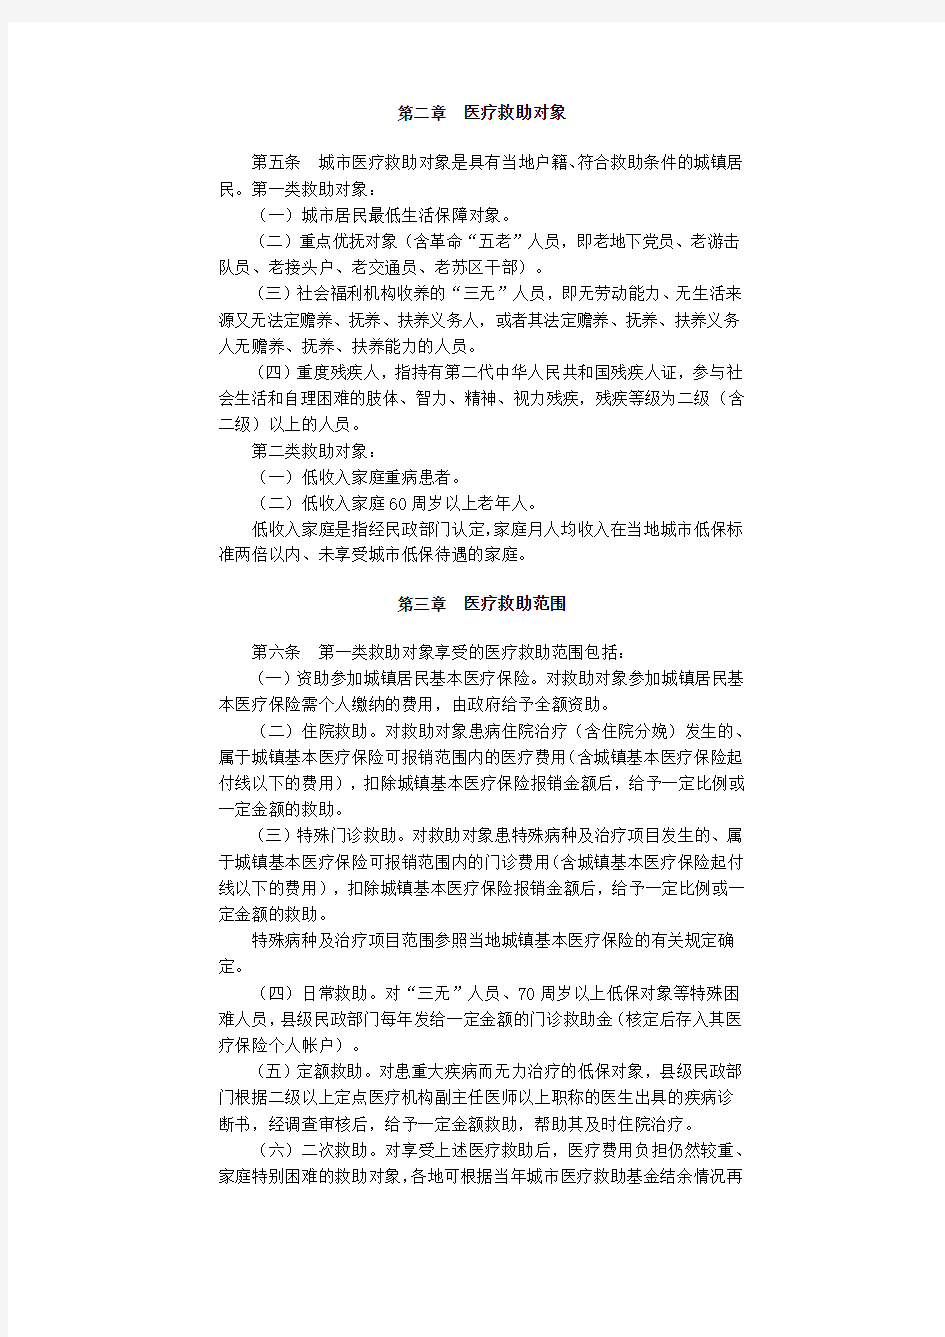 福建省人民政府批转省民政厅等部门关于福建省城市医疗救助办法的通知